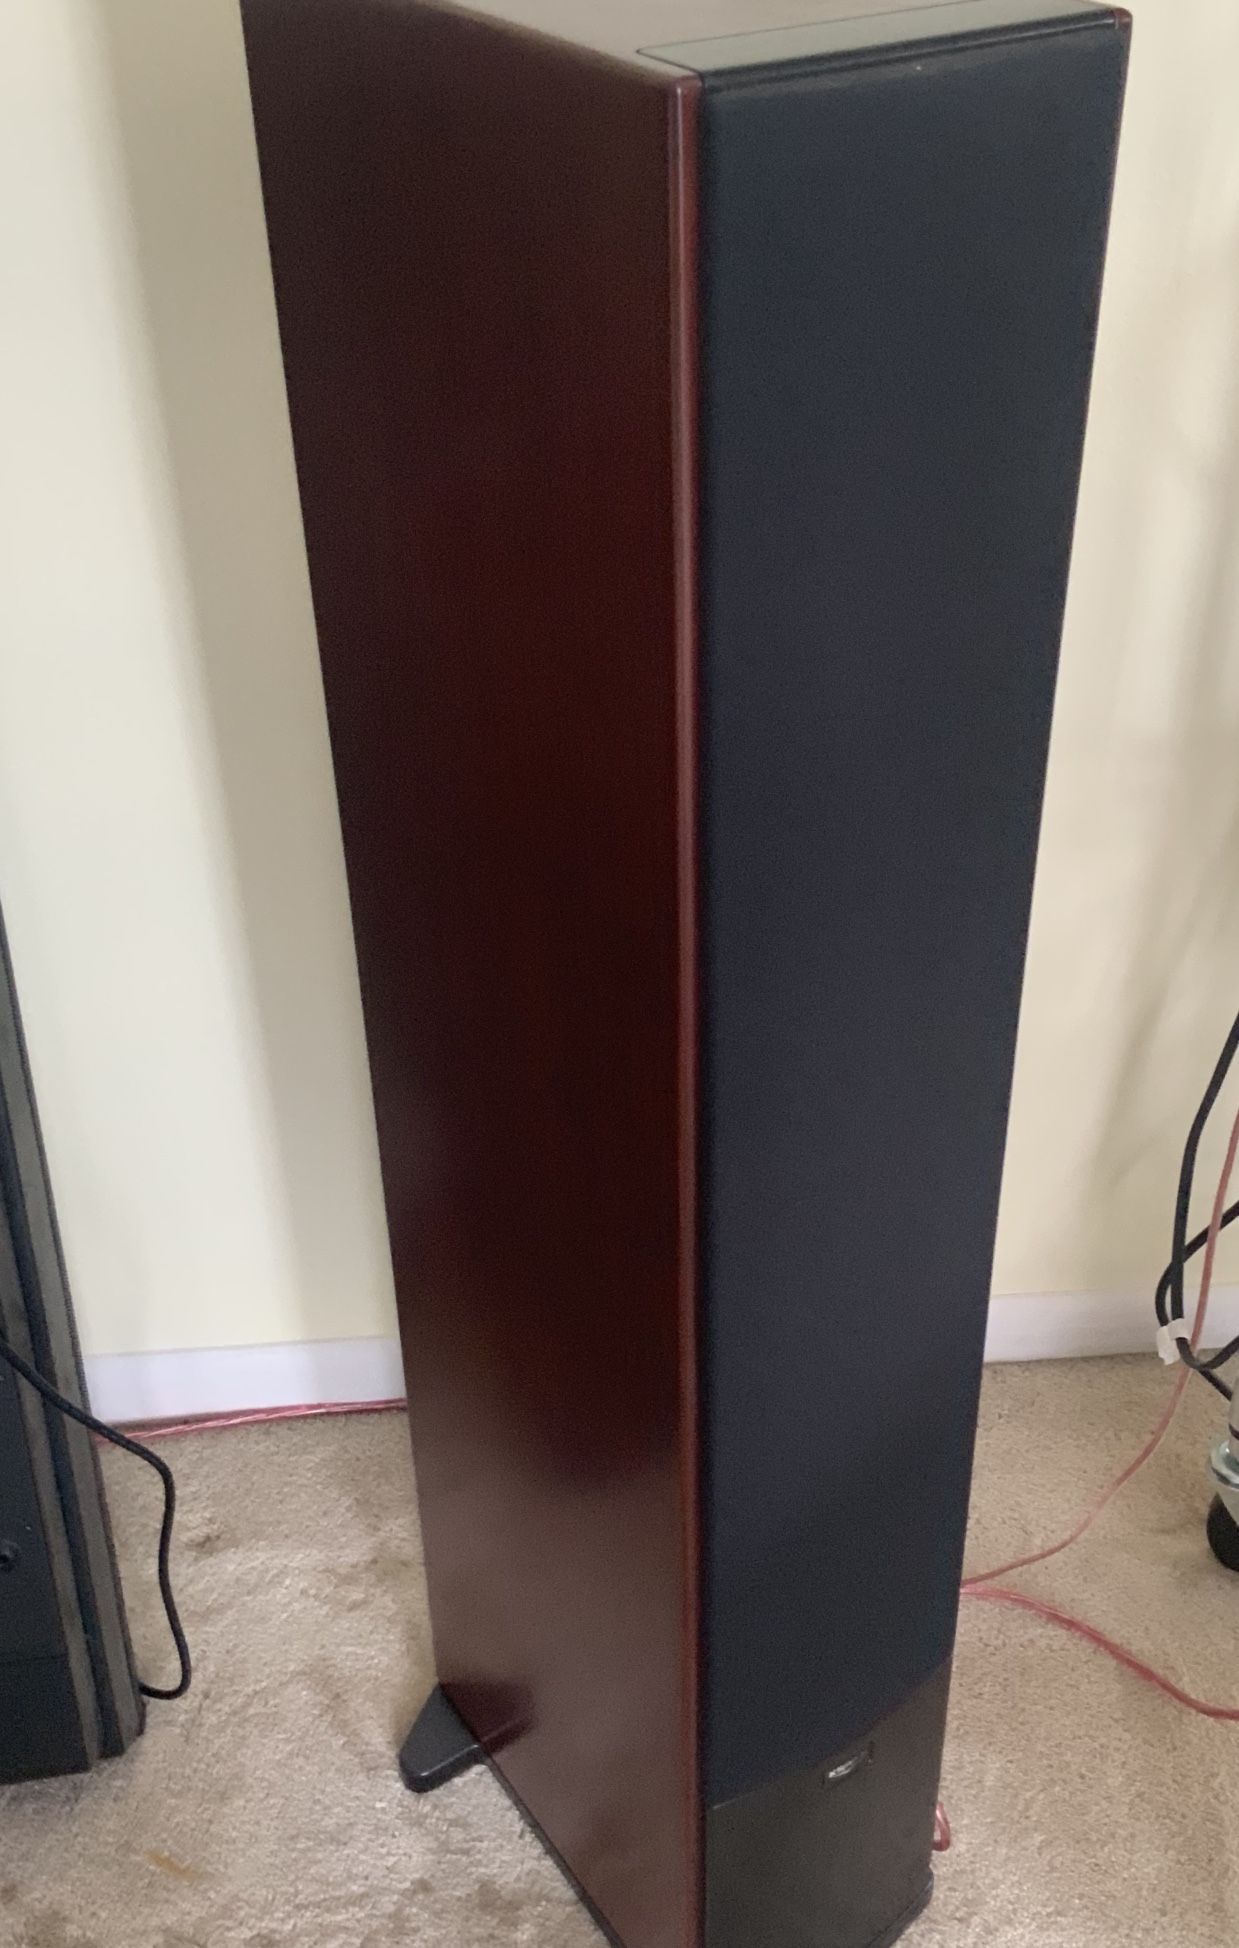 Klipsch Floor Speakers - New In Box